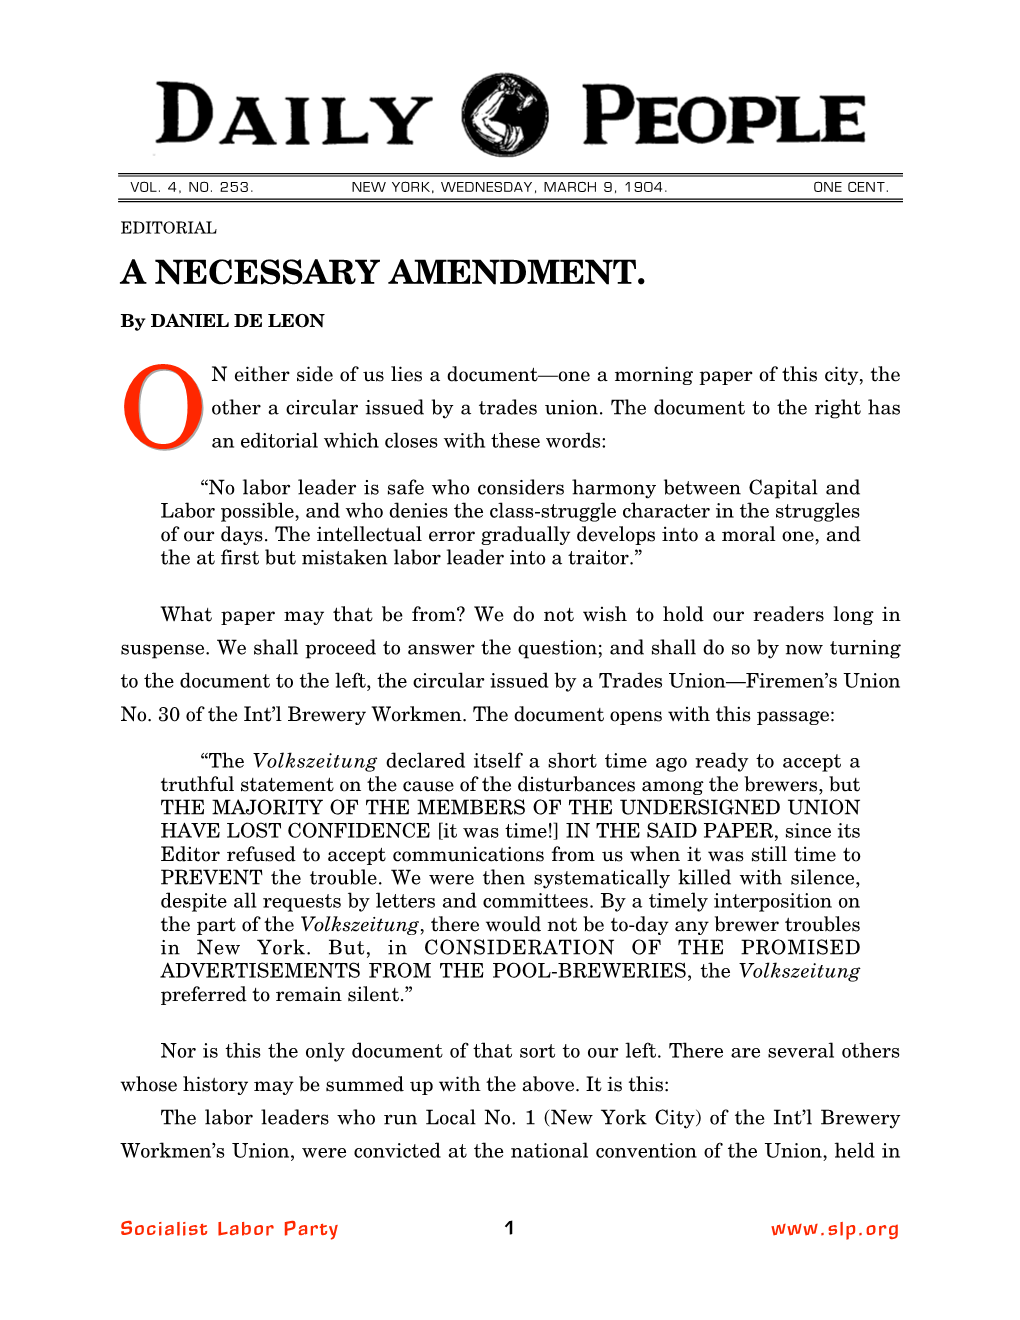 A Necessary Amendment